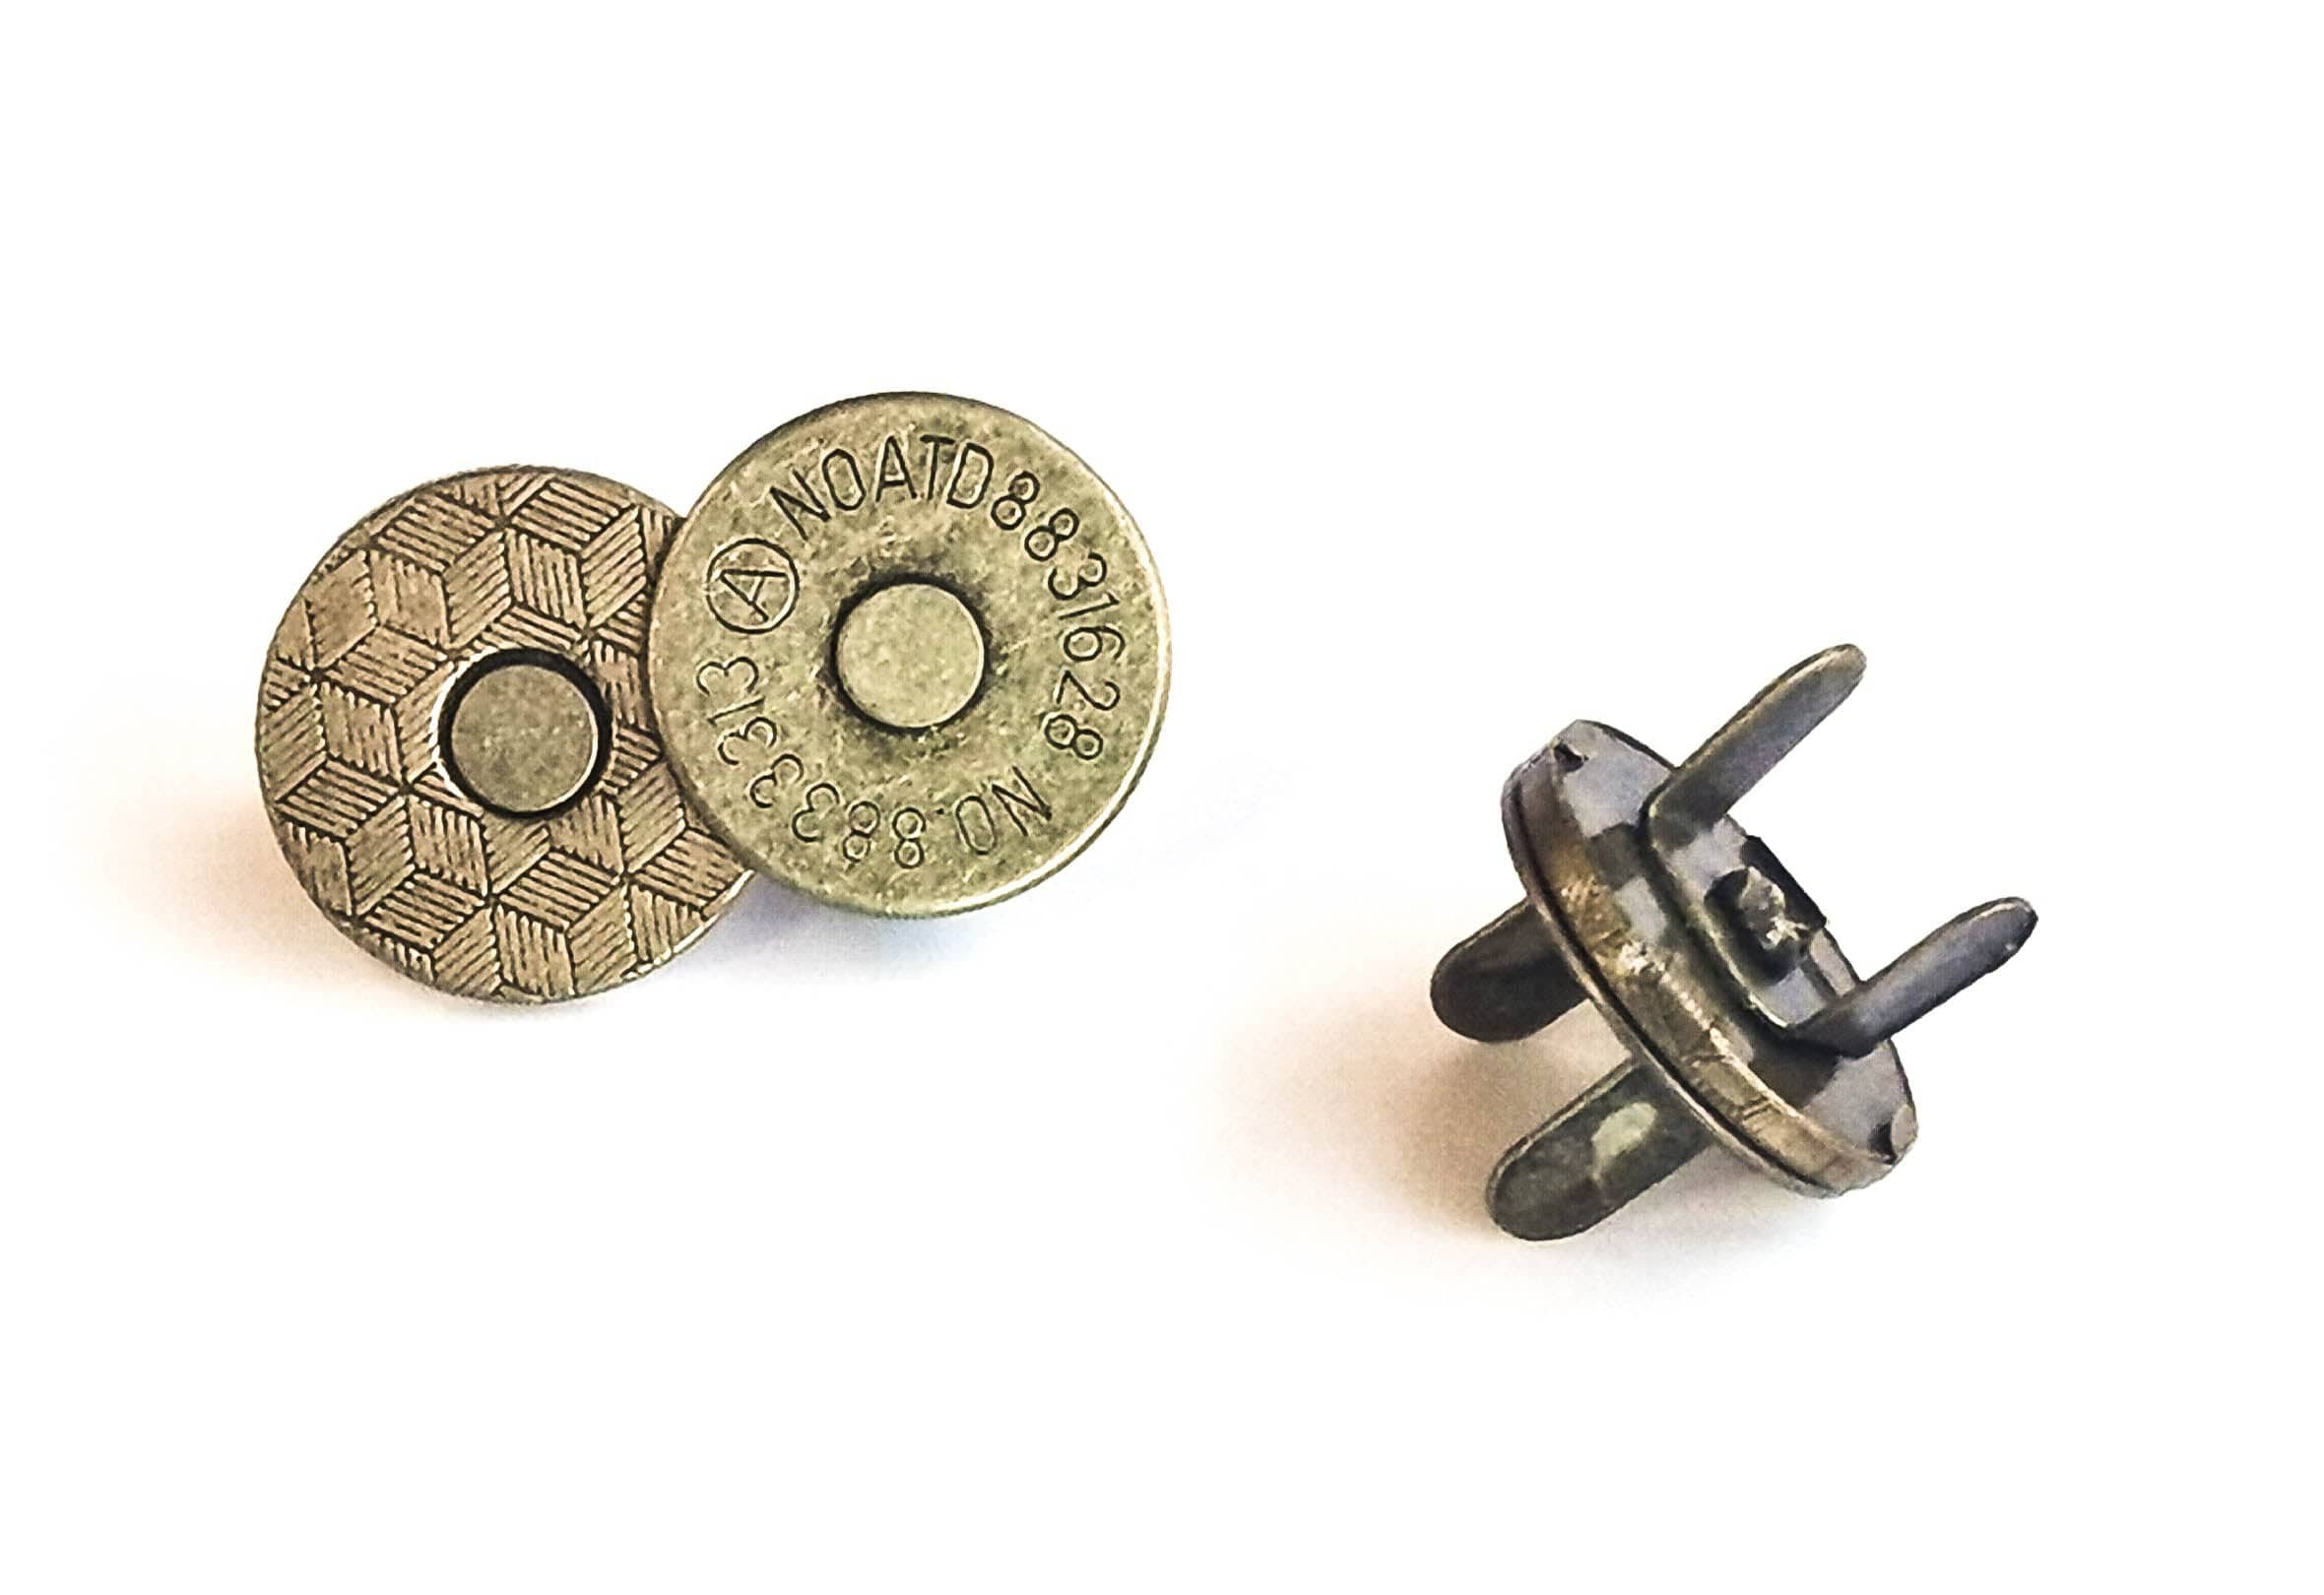 Kiwi Bagineers magnetic snap 18mm x 2mm Slimline / Antique Brass Metal Magnetic Snap Closures 18mm Slimline 2 pack By Kiwi Bagineers